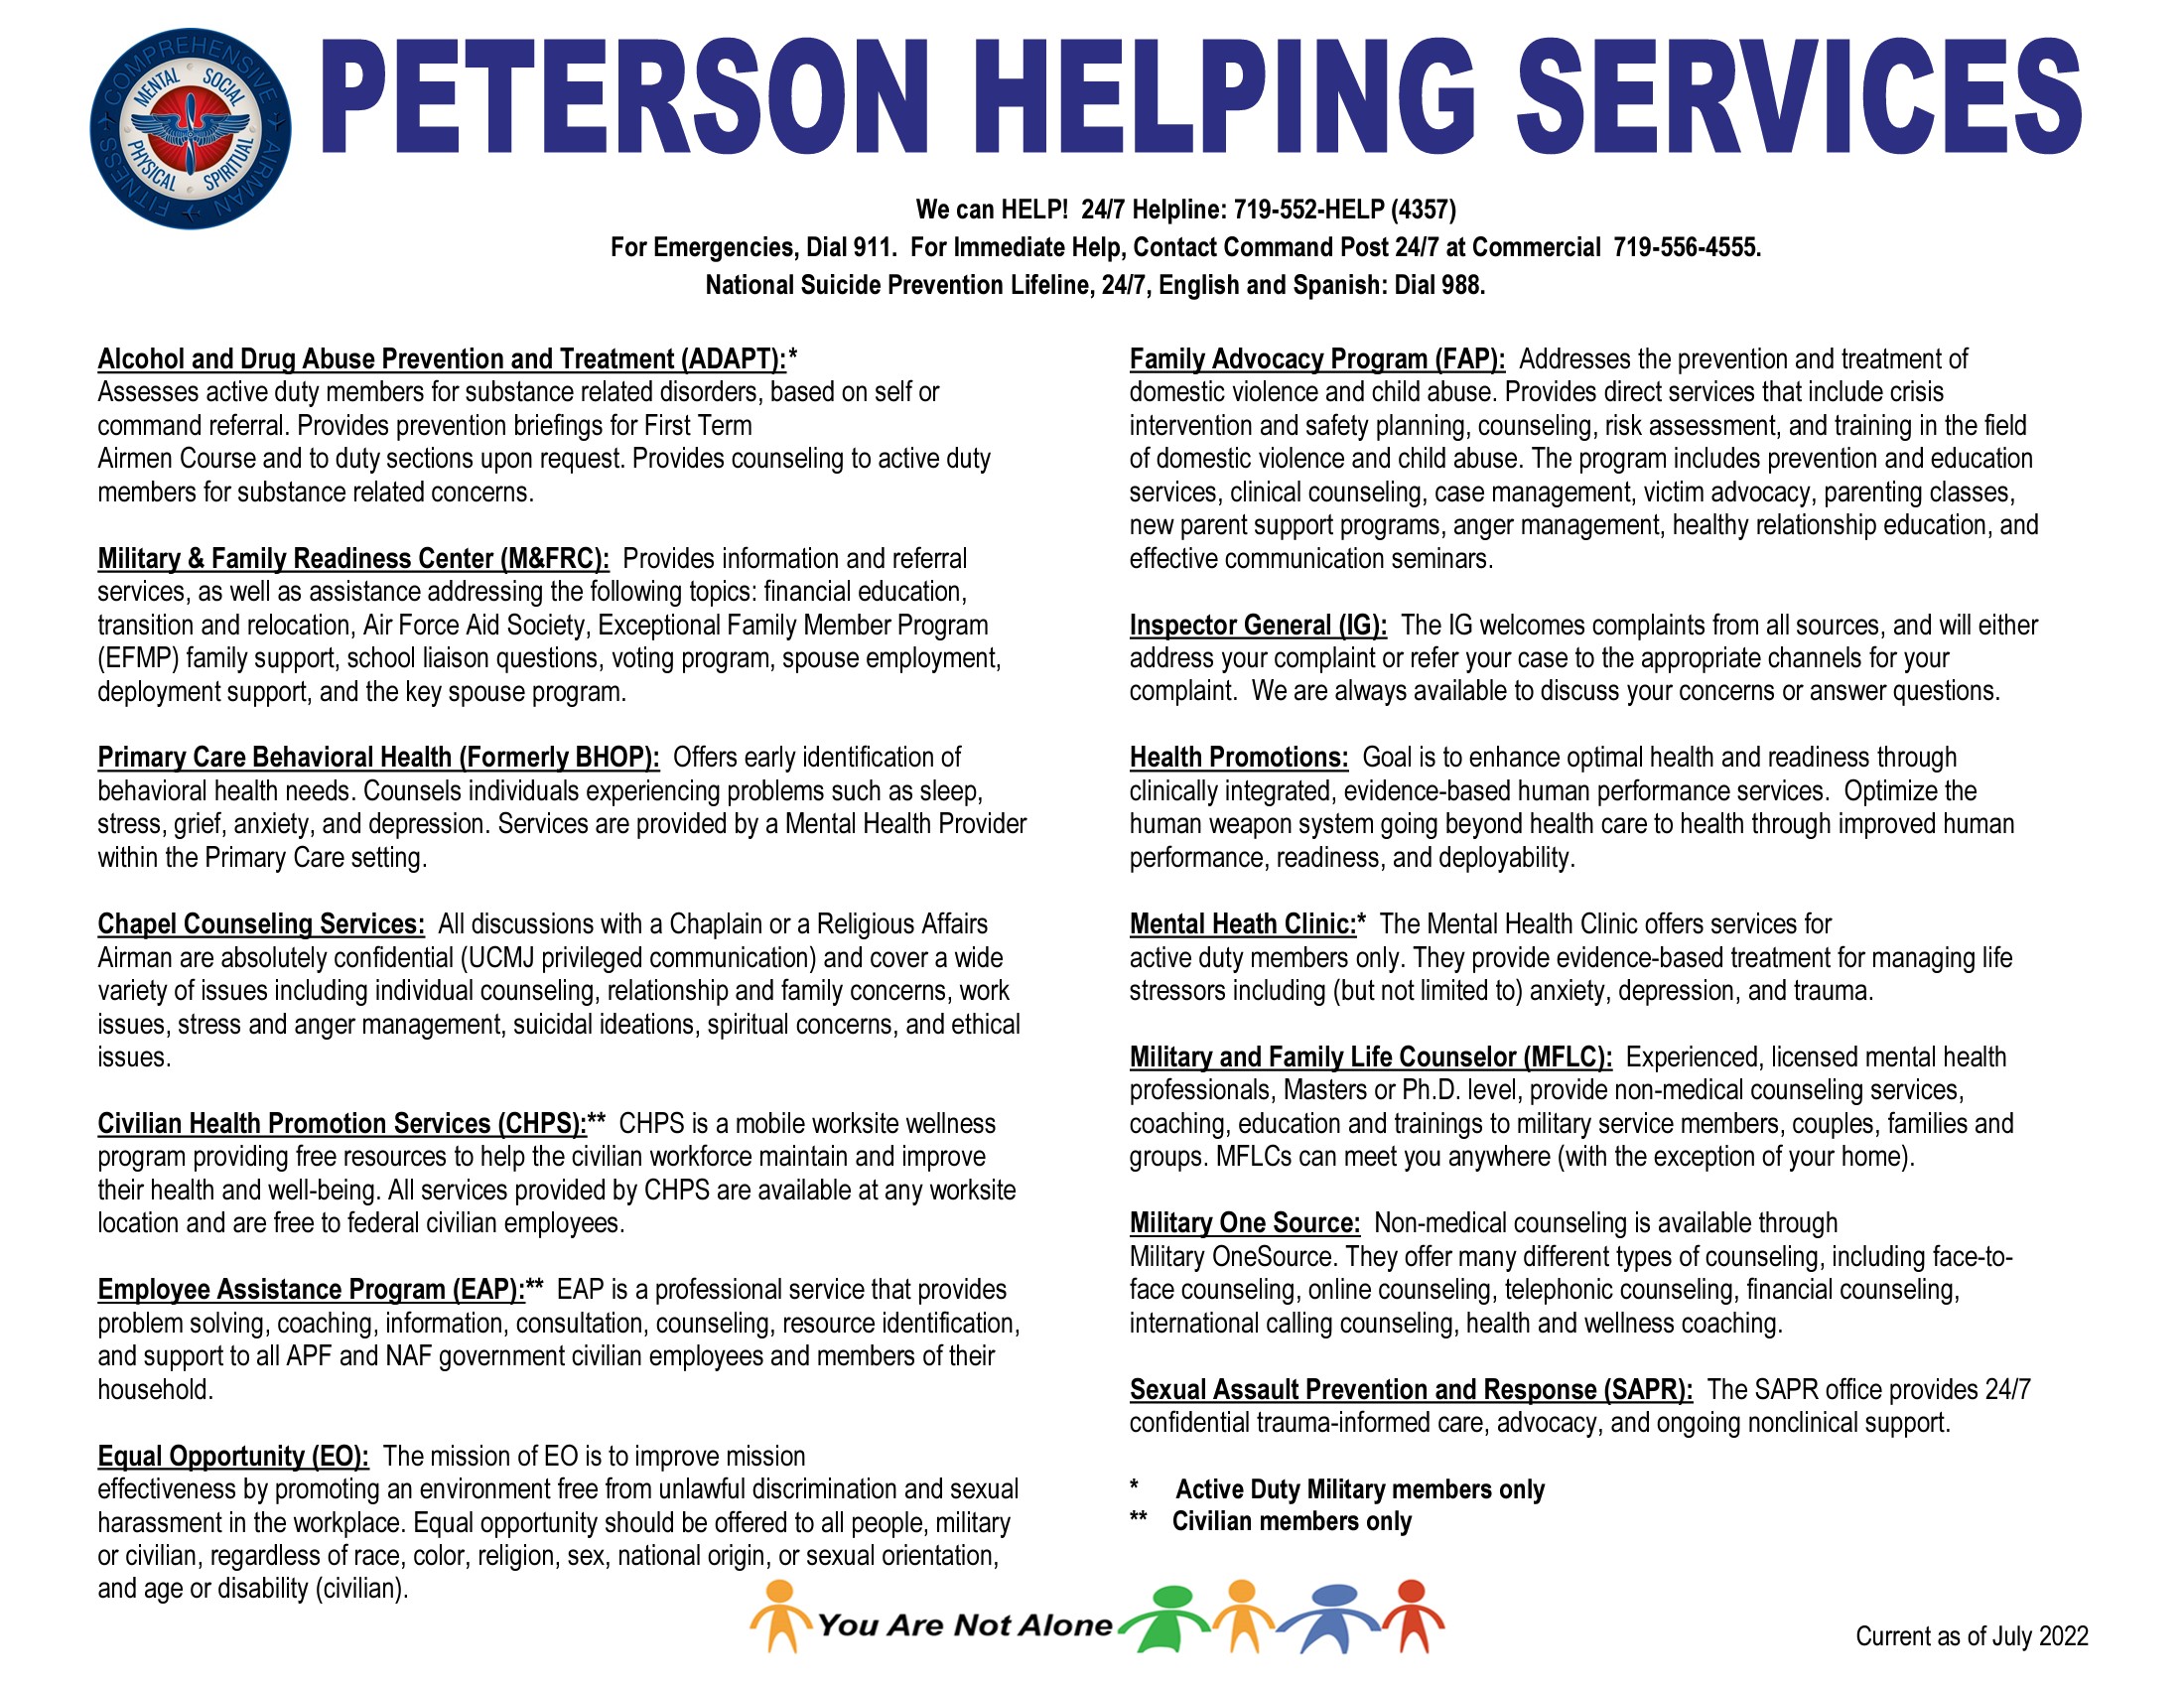 Peterson SFB Helping Agencies Matrix 2